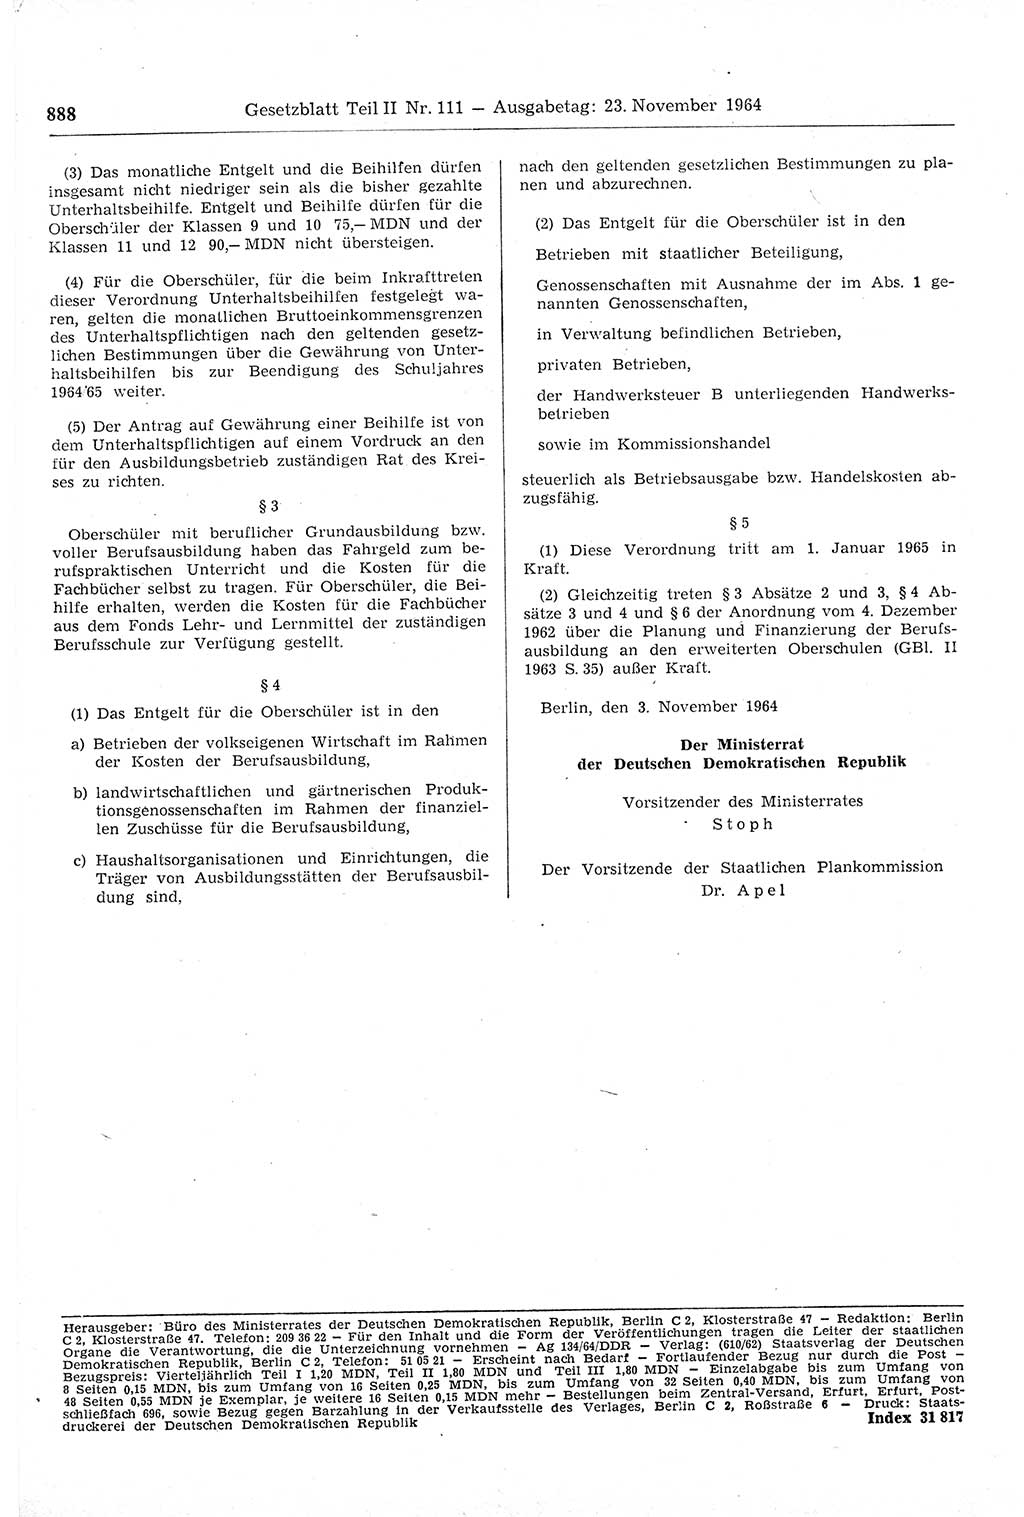 Gesetzblatt (GBl.) der Deutschen Demokratischen Republik (DDR) Teil ⅠⅠ 1964, Seite 888 (GBl. DDR ⅠⅠ 1964, S. 888)